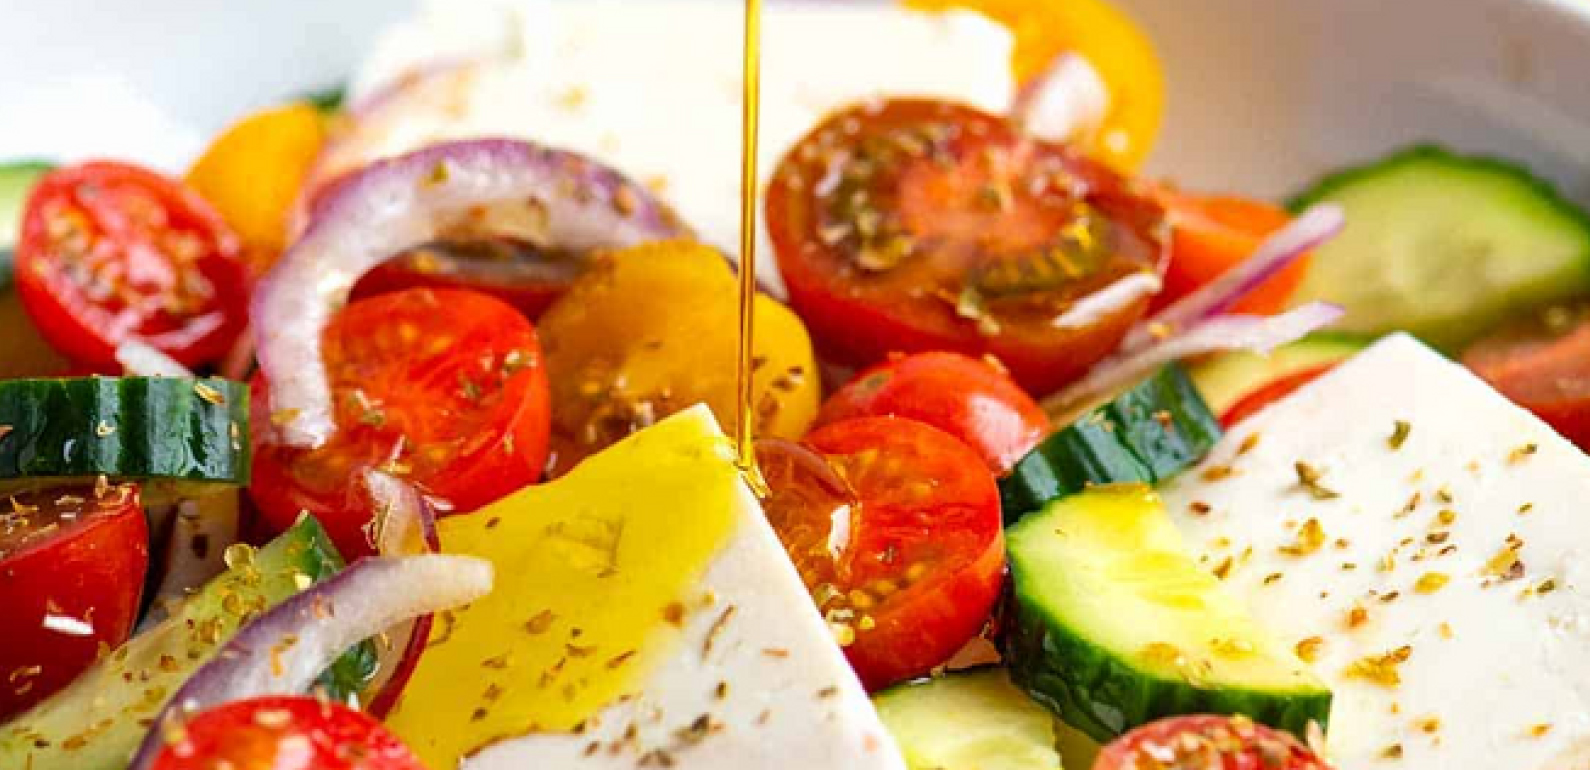 ENSALADA GRIEGA: Recetas de comida griega - Recetas cretenses con aceite de oliva